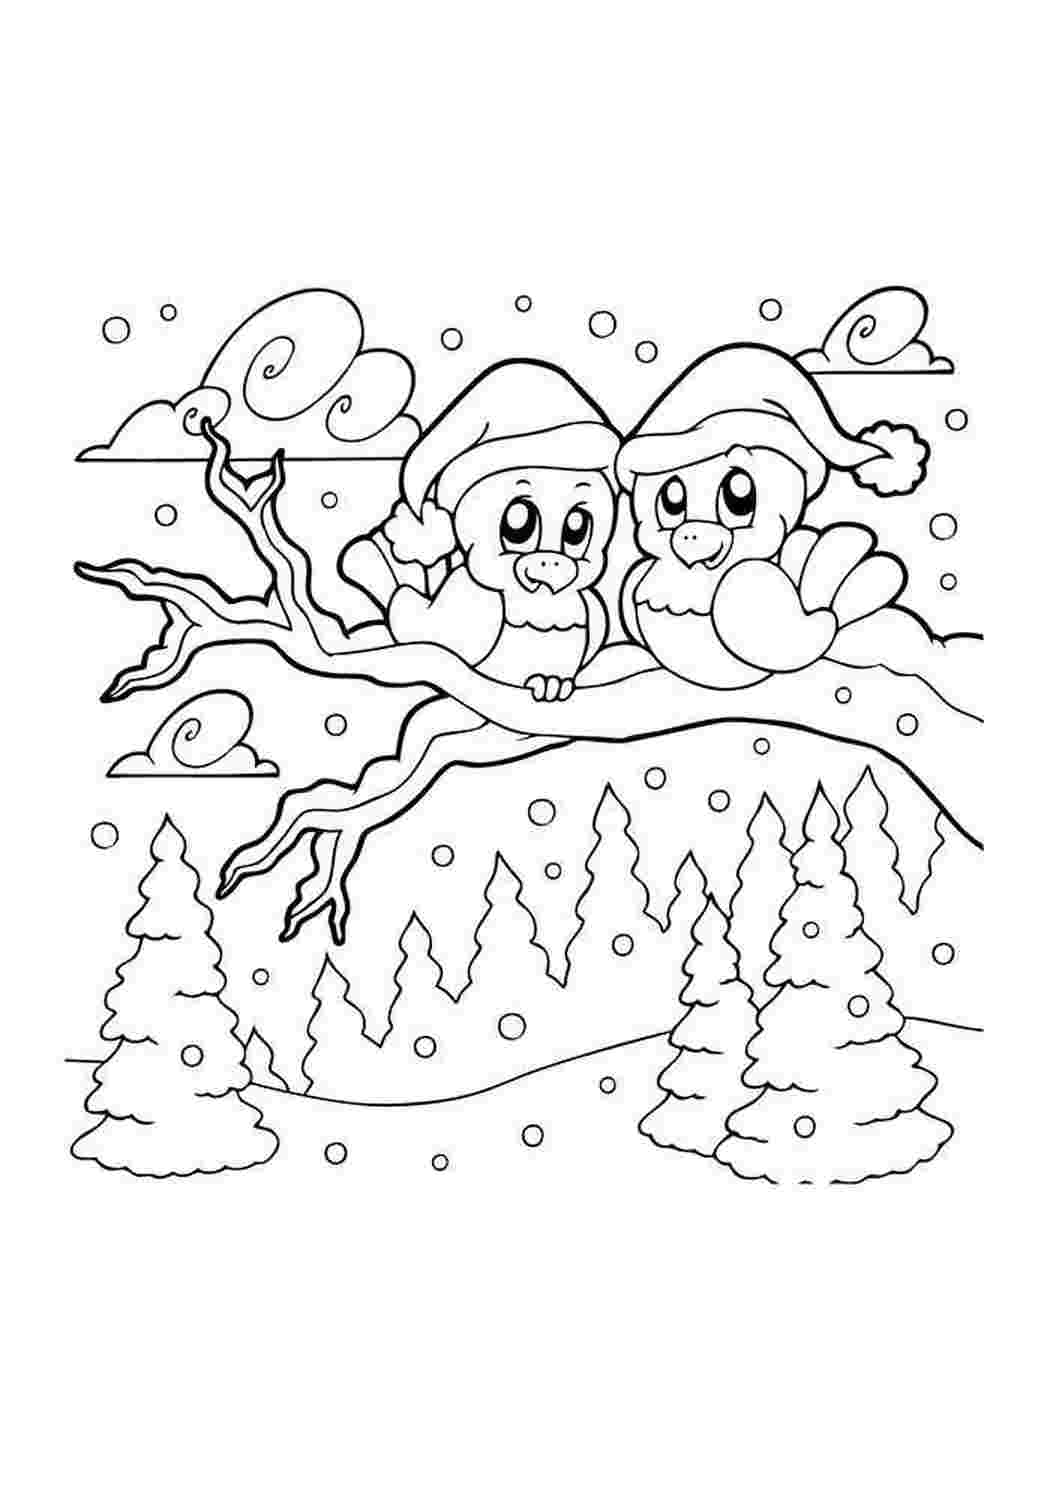 «Птички зимой» бесплатная раскраска для детей - мальчиков и девочек